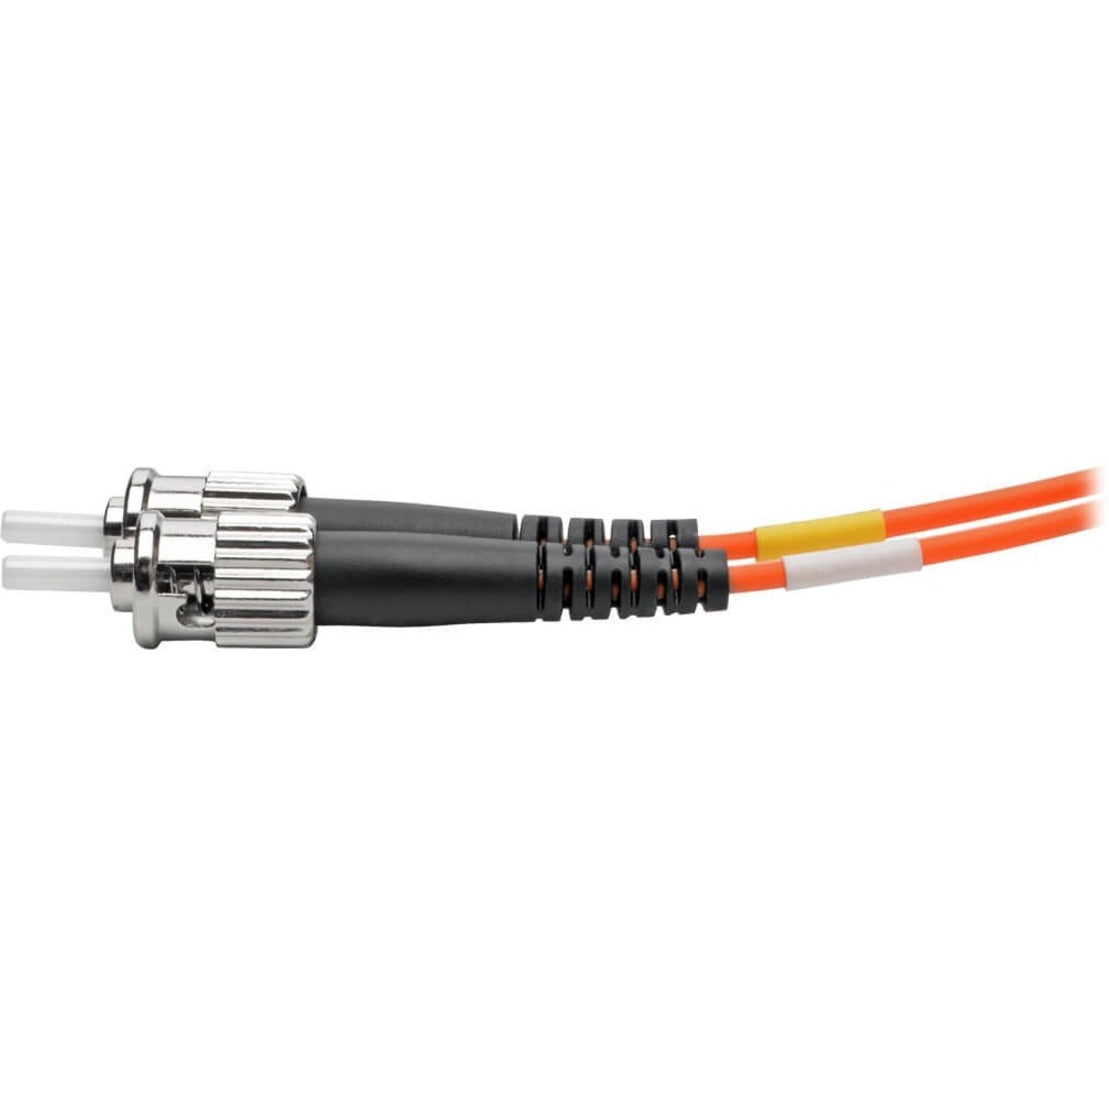 Tripp Lite N318-05M Fiber Optic Duplex Patch Cable, 16.40 ft, Orange, Lifetime Warranty